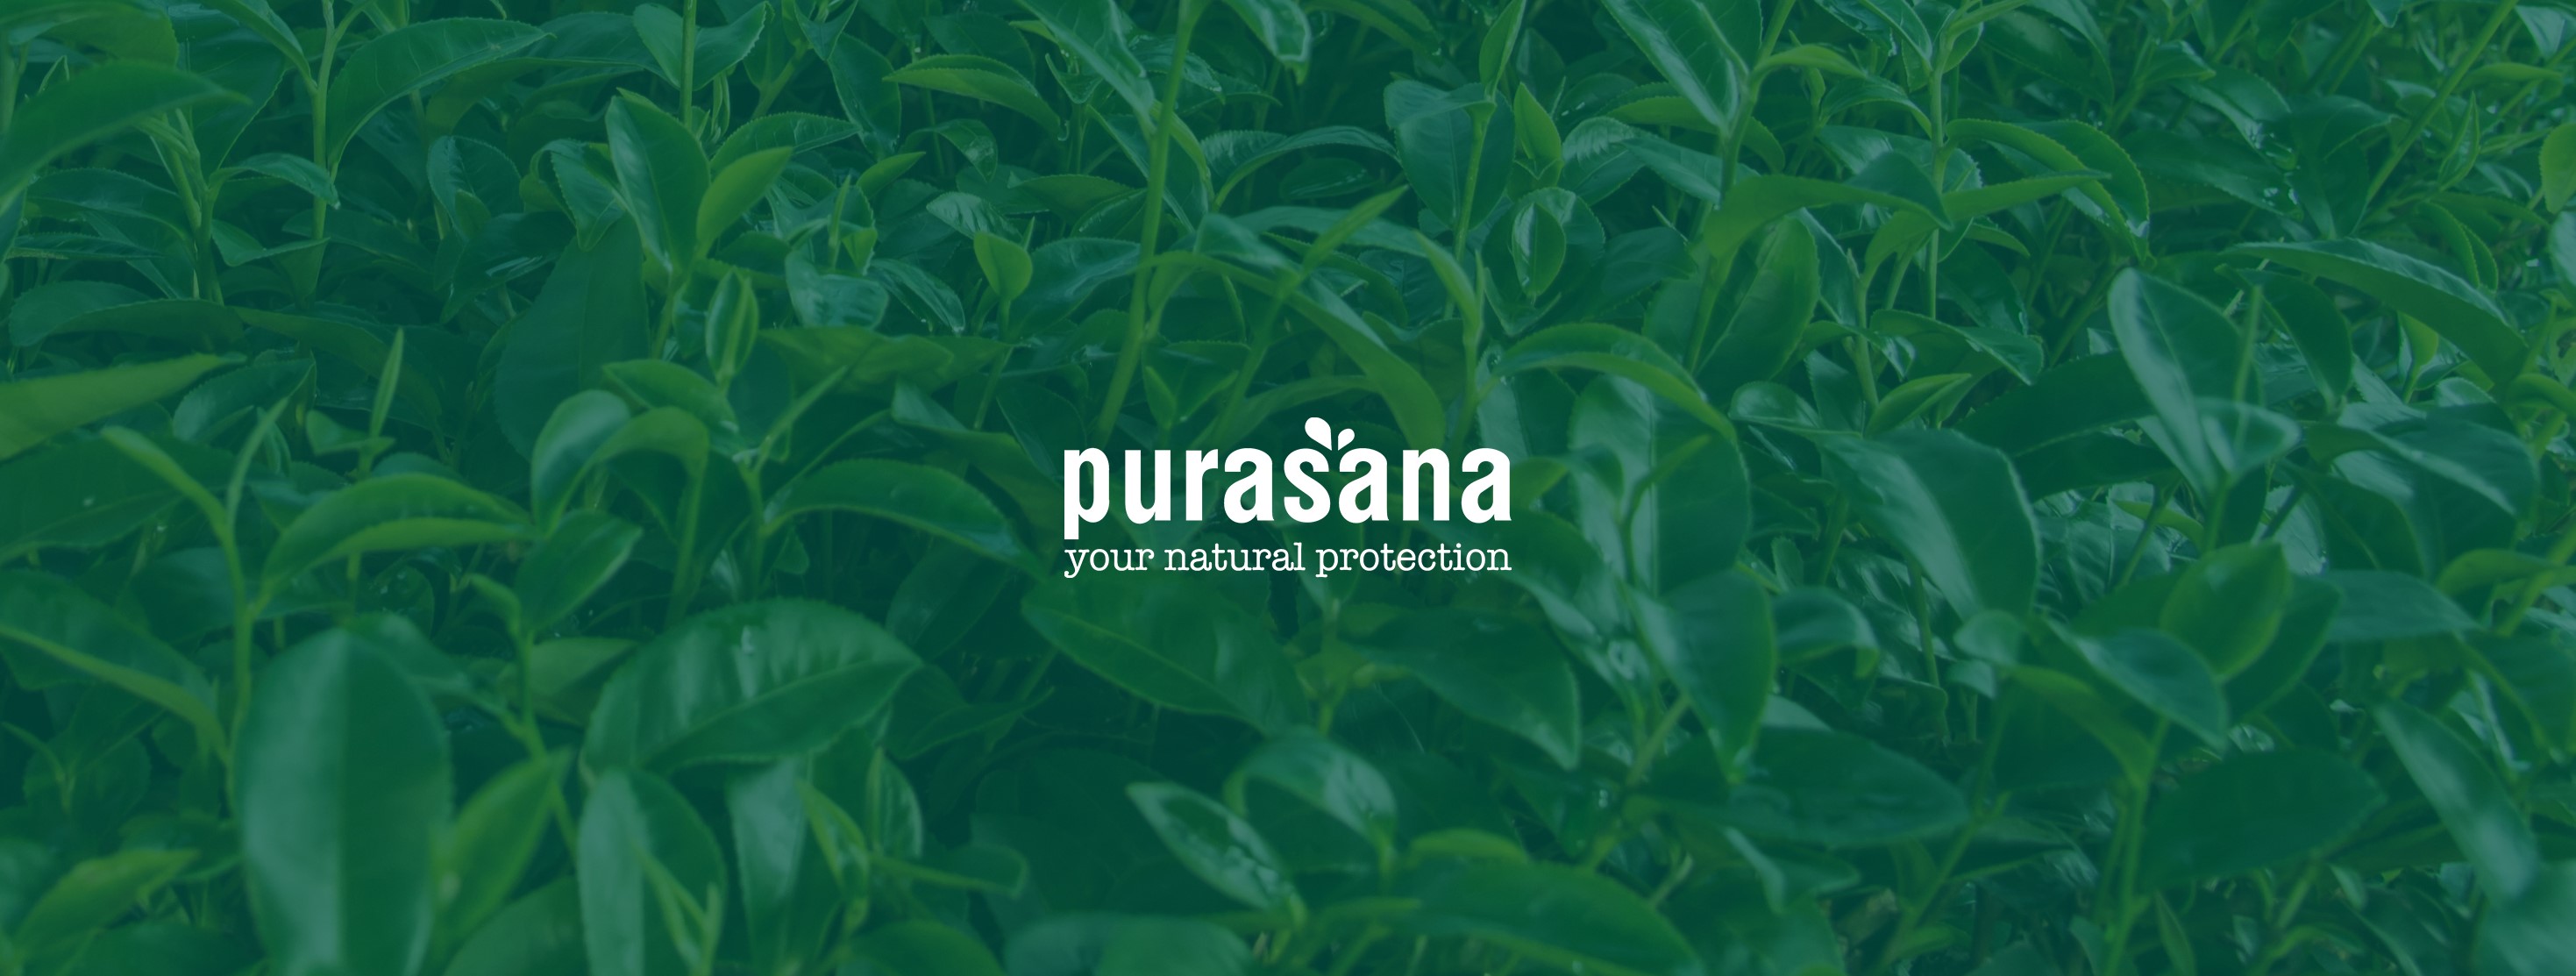 Purasana | In the spotlight